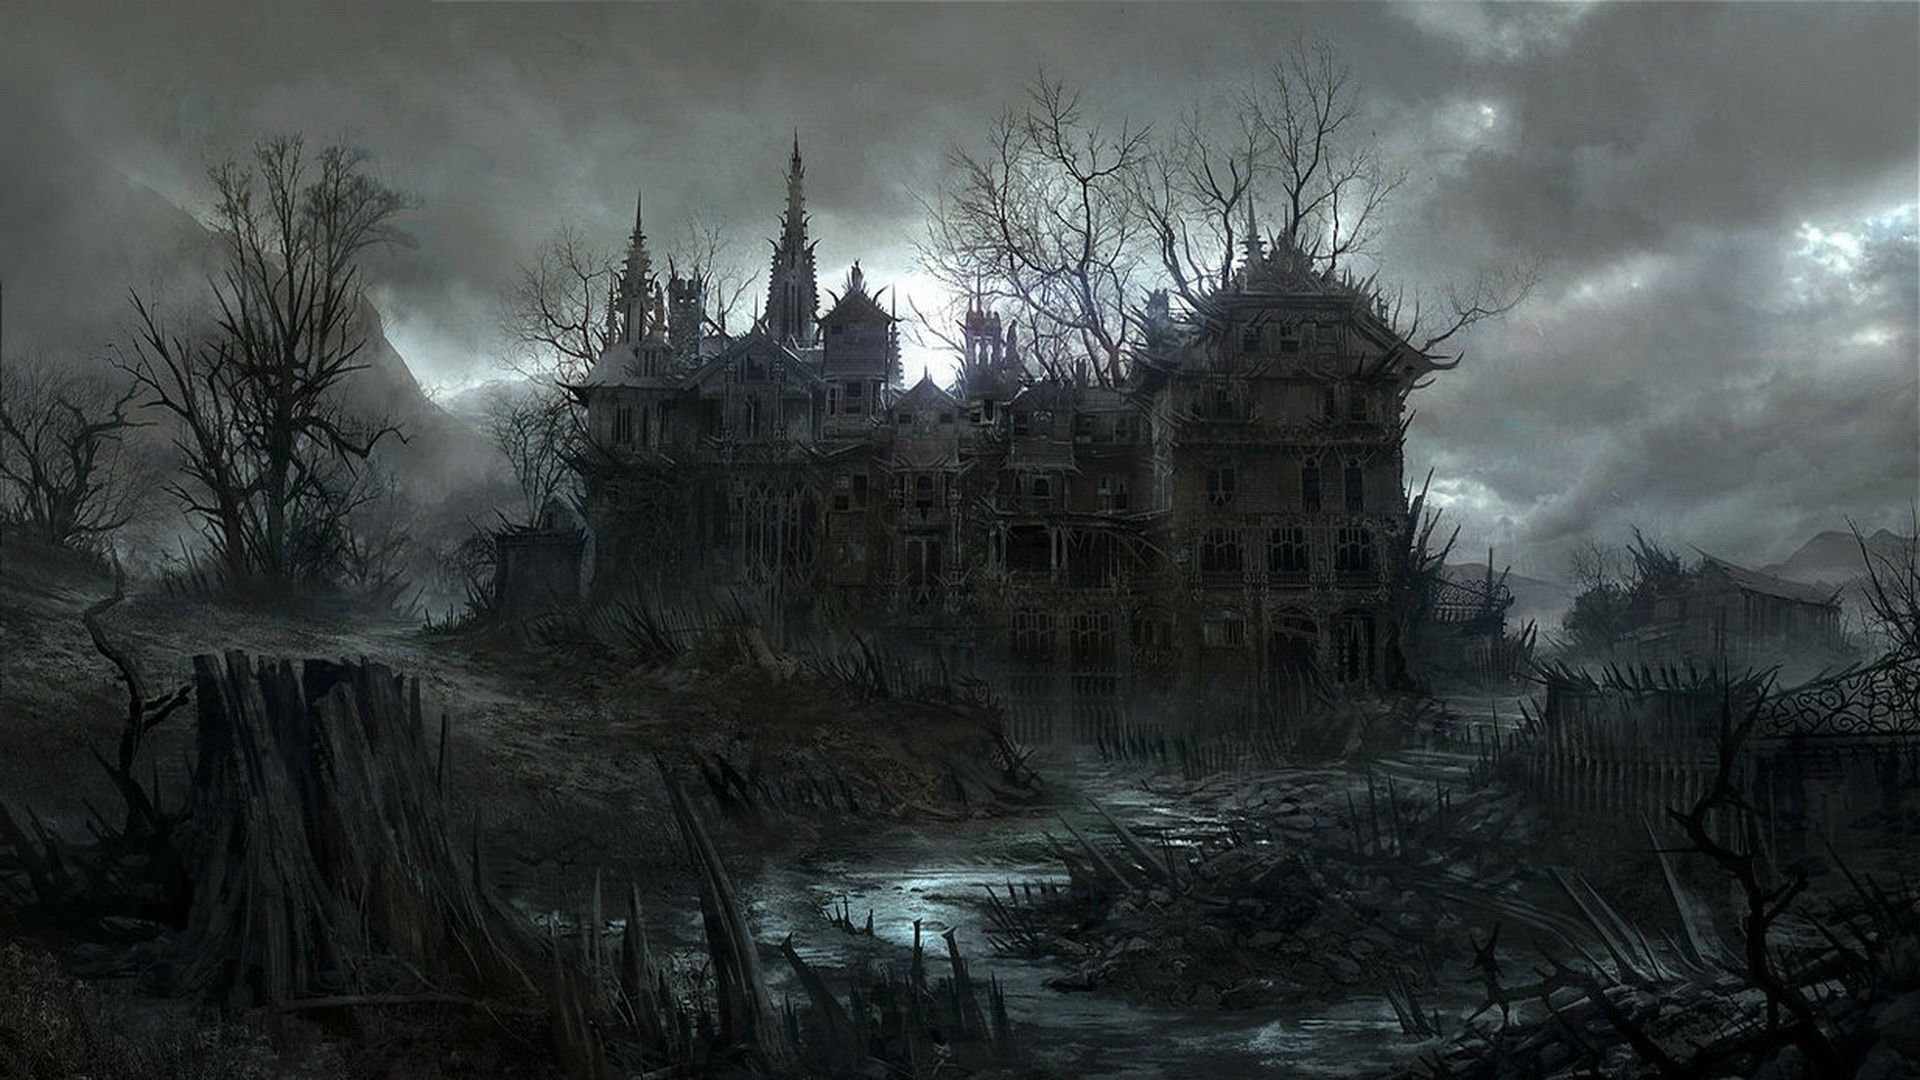 HALLOWEEN dark haunted house spooky wallpaper 1920x1080 497956